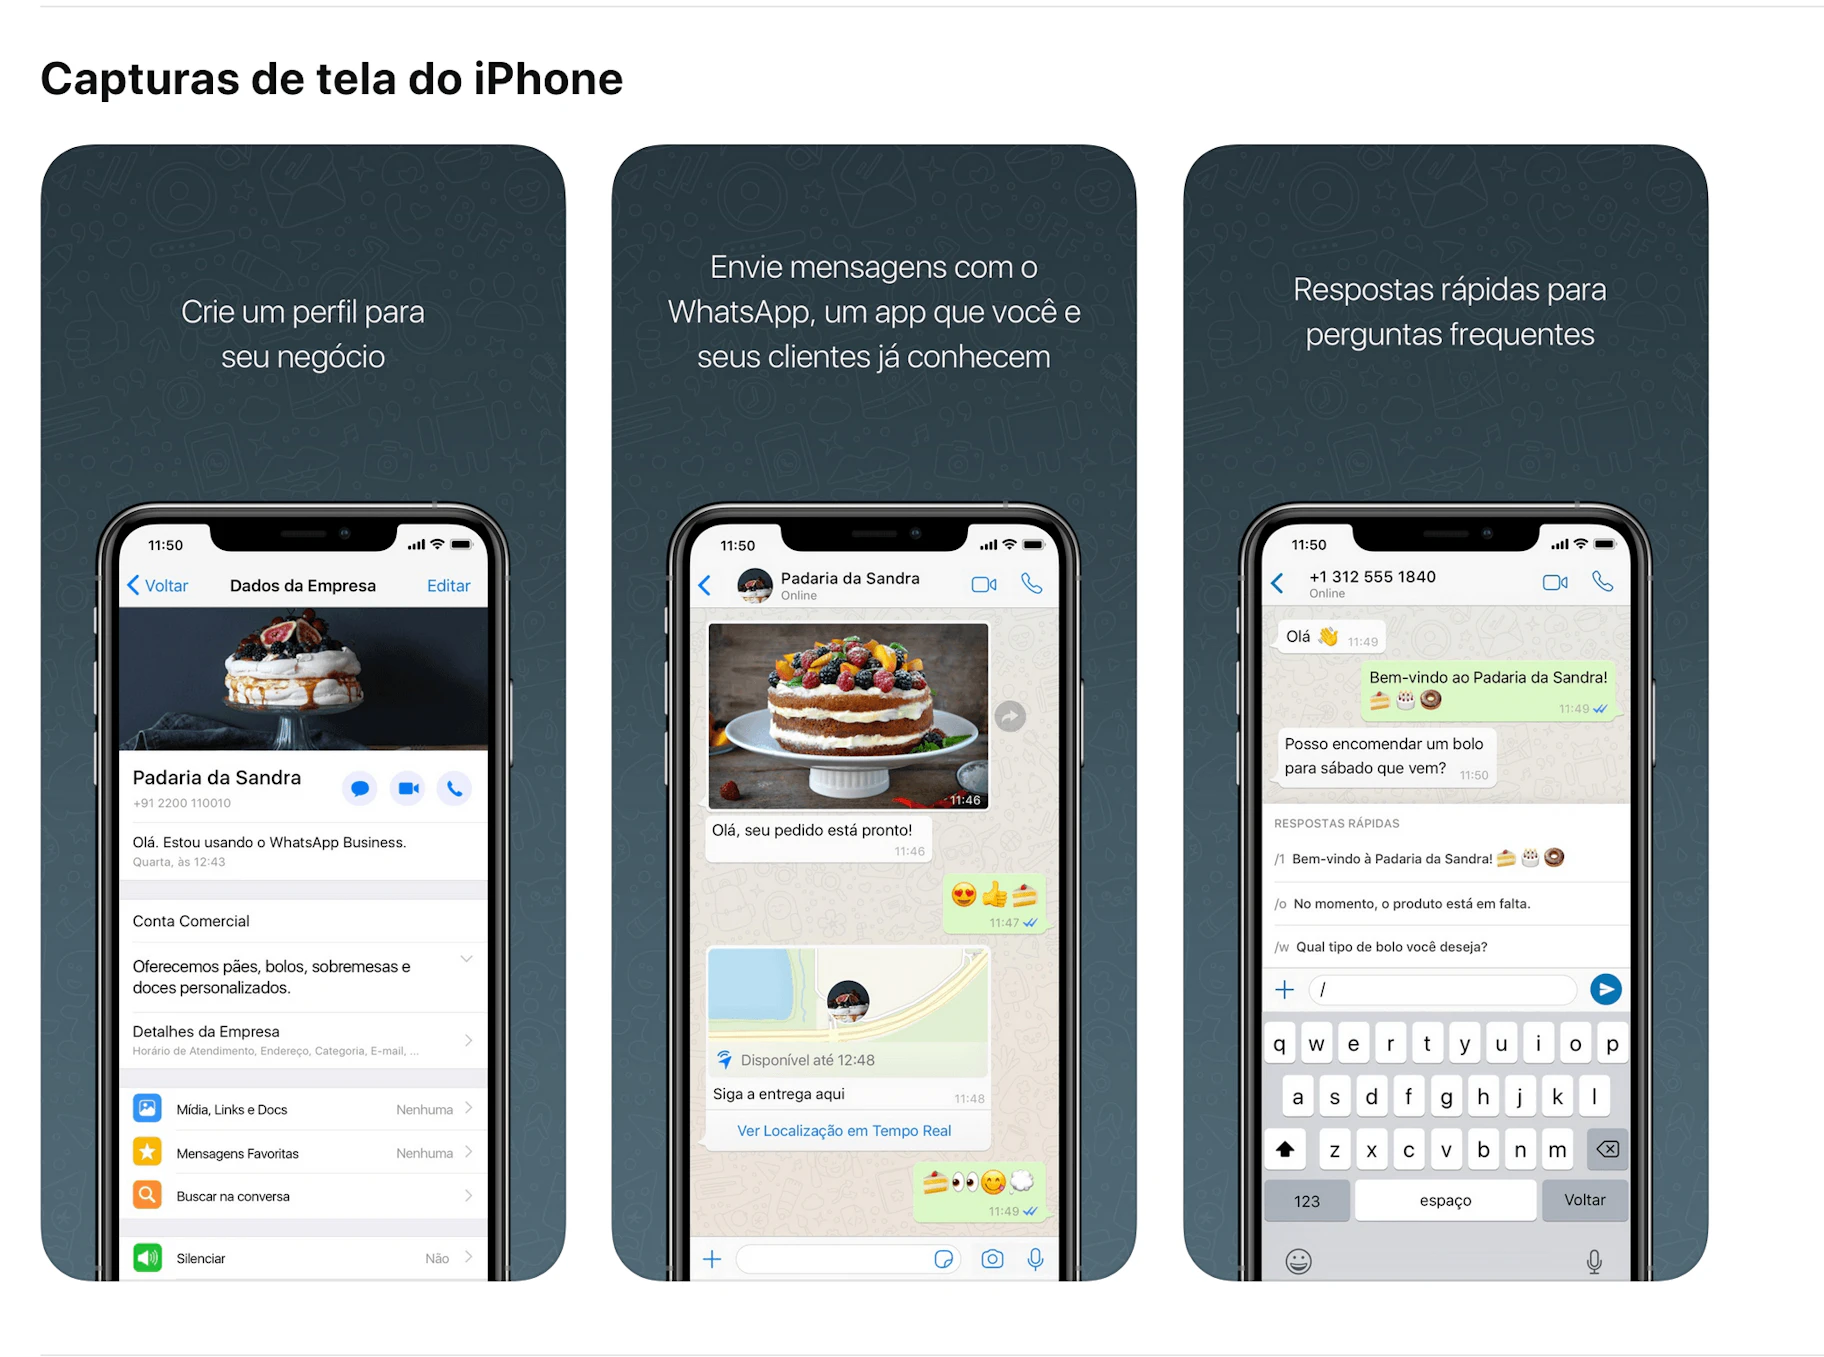 Três capturas de tela de iPhones com conteúdo sobre as vendas no Whatsapp, mostrando a criação de perfis para negócios, envio de mensagens pelo Whatsapp e a opção de respostas rápidas para perguntas frequentes.